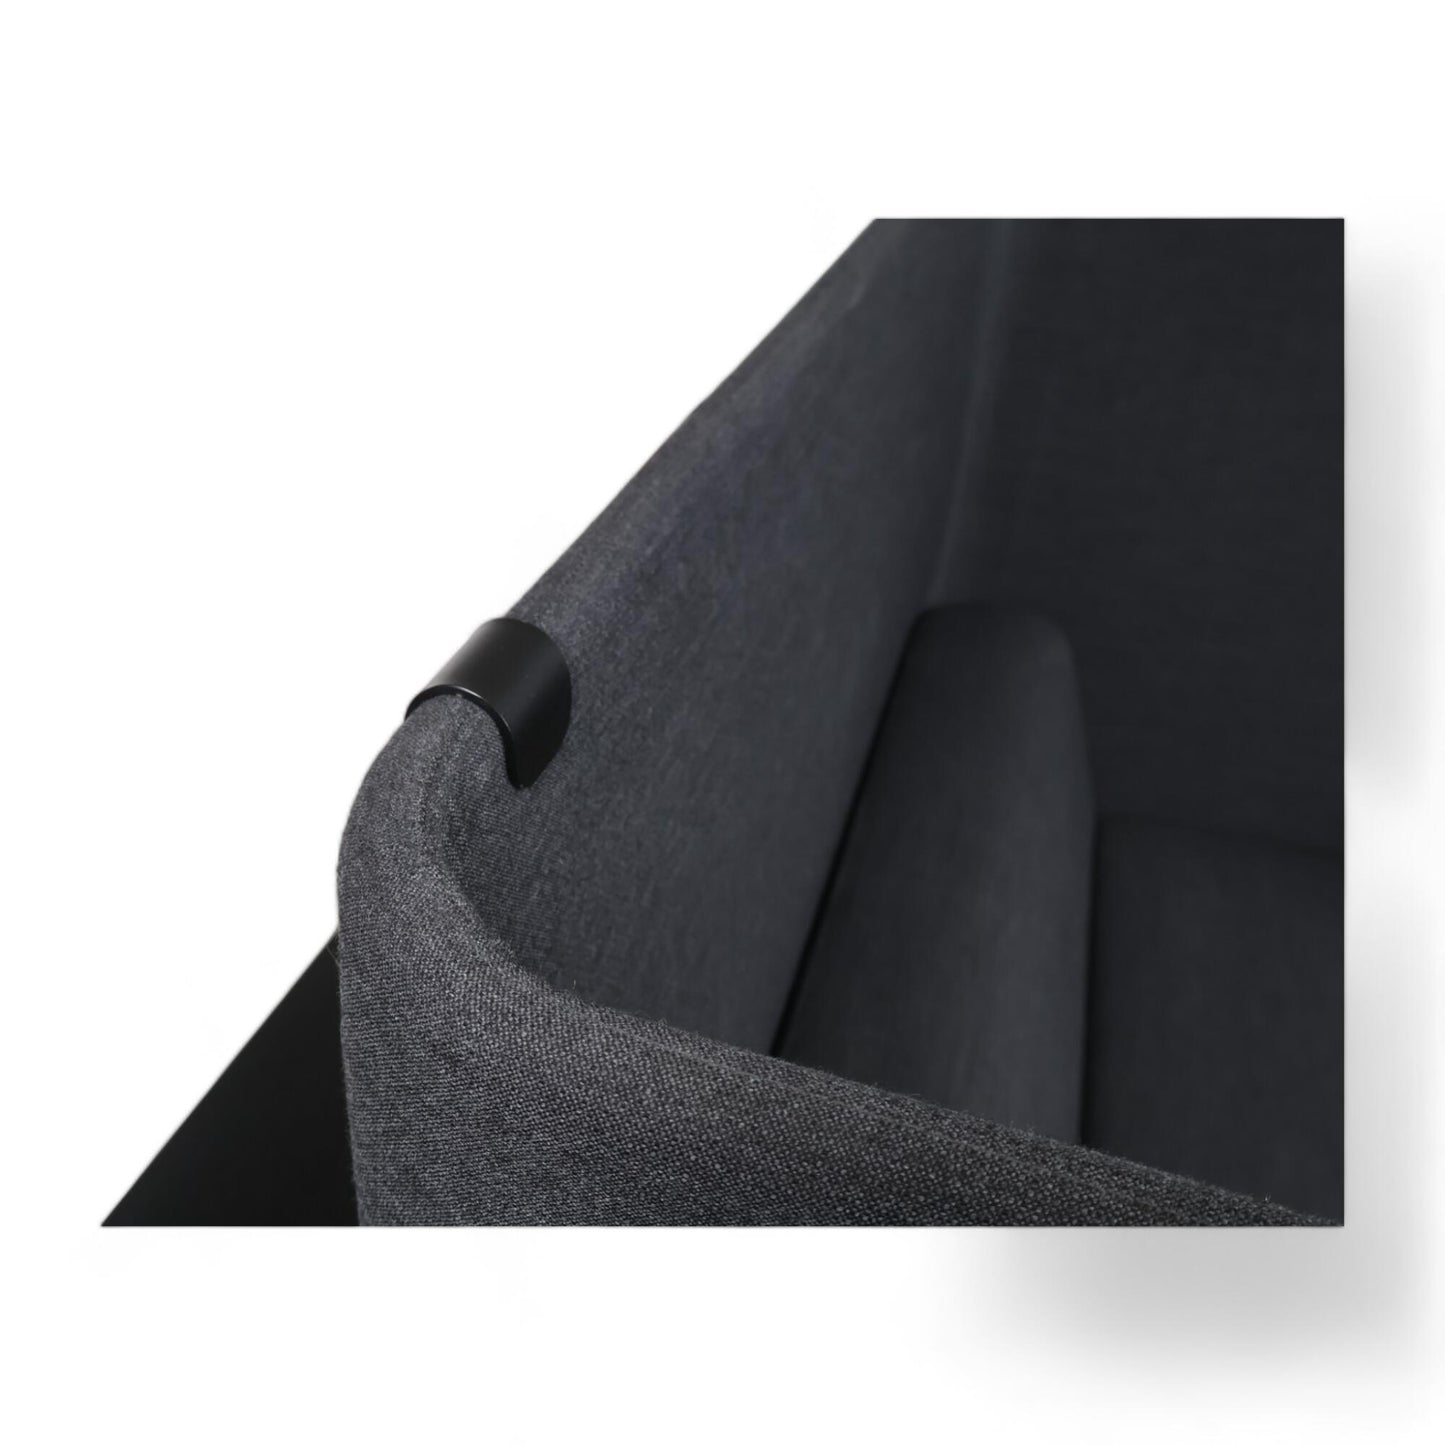 Nyrenset | Mørk grå Holmris B8 Tweet alcove sofa med arbeidsstasjon